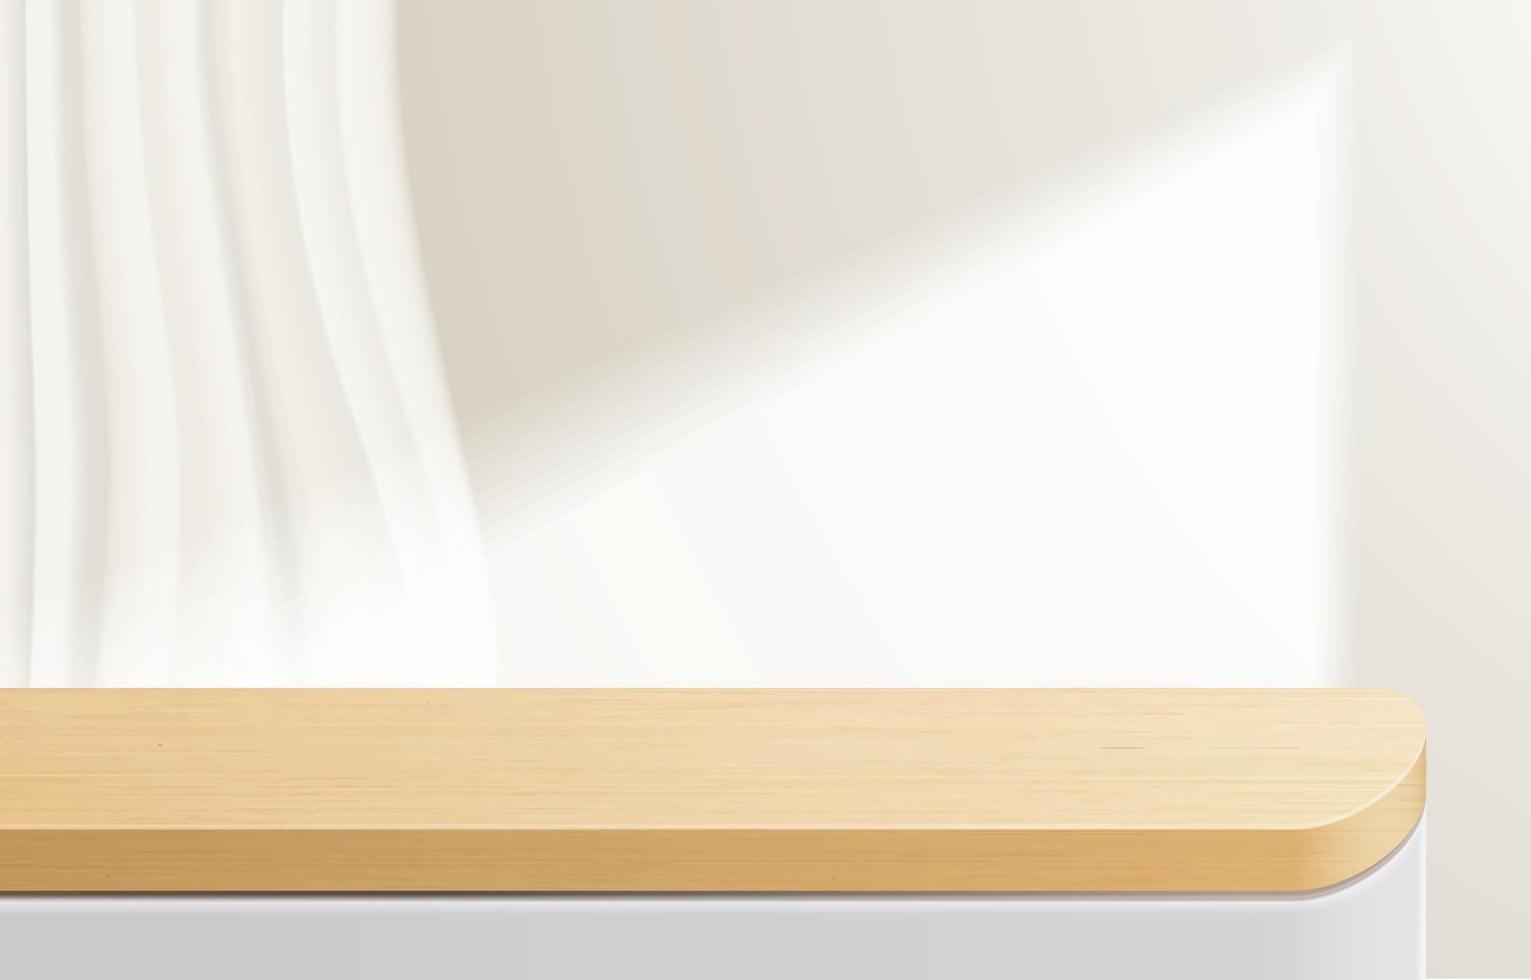 mesa superior de madeira mínima vazia, pódio de madeira em fundo branco. para apresentação de produtos, mock up, exibição de produtos cosméticos, pódio, pedestal de palco ou plataforma. Vetor 3d